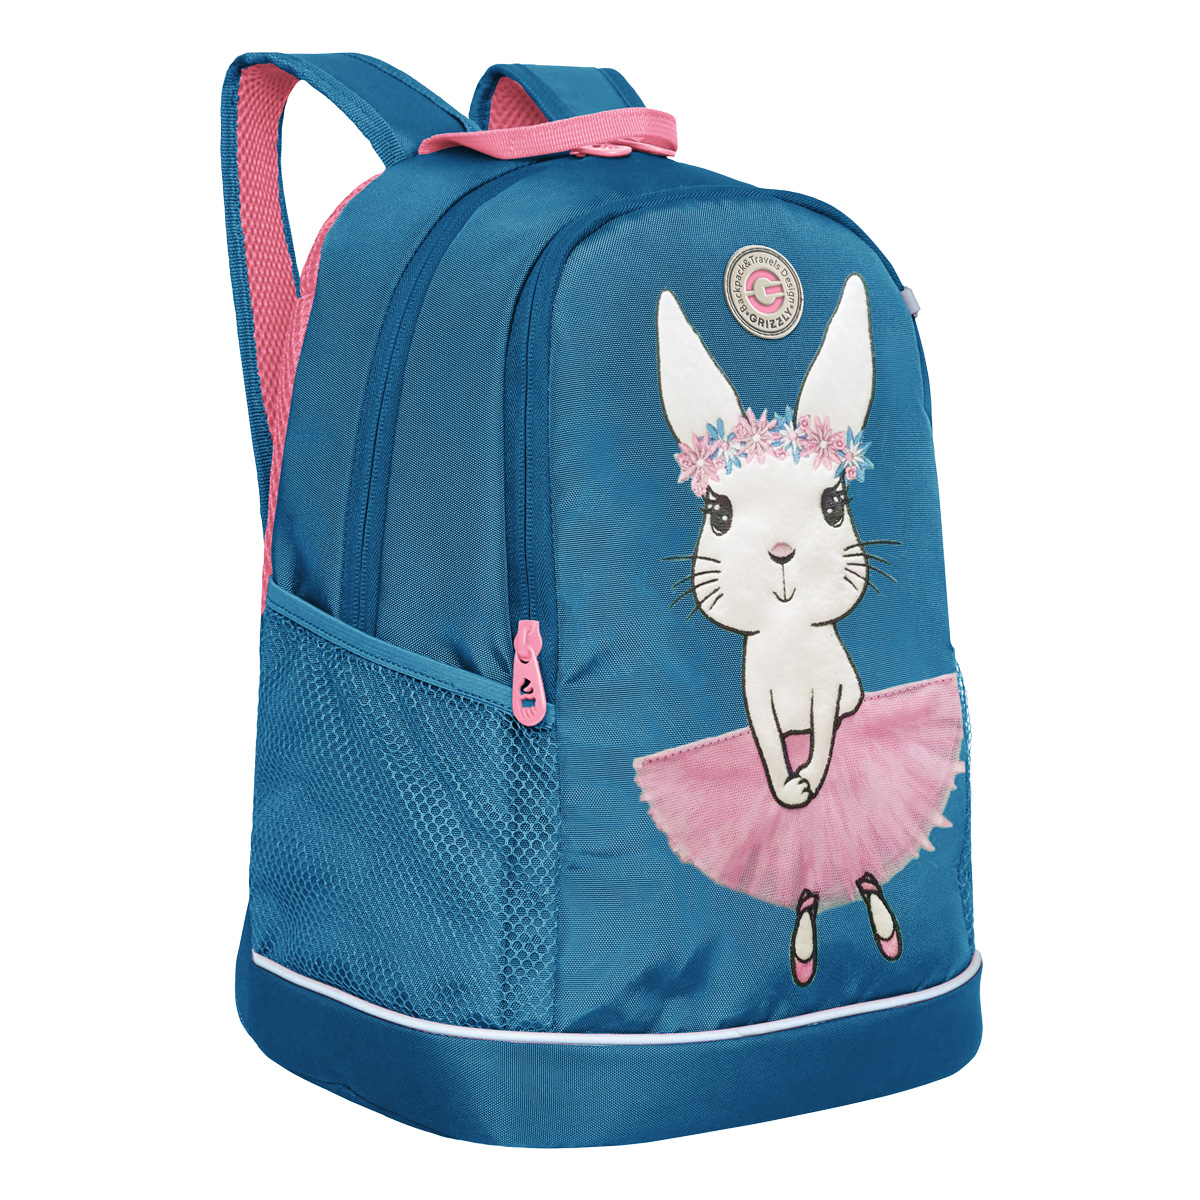 Рюкзак Grizzly школьный для девочке RG-363-4 grizzly рюкзак rx 022 2